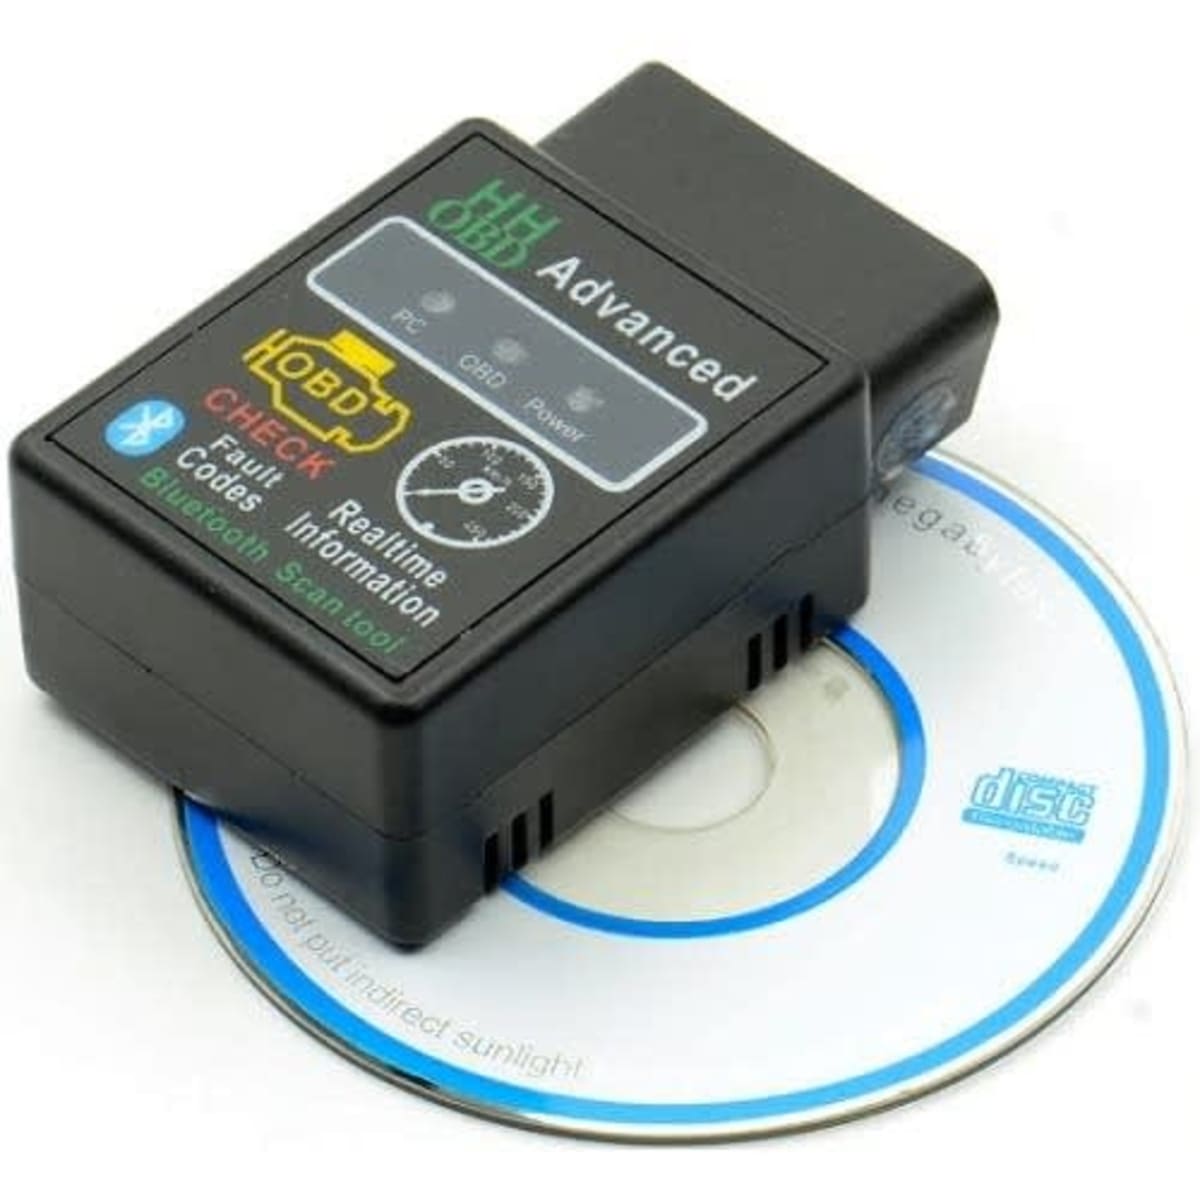 ELM327 V2.1 Bluetooth OBD2 Car Fault Diagnostic Tool - Black